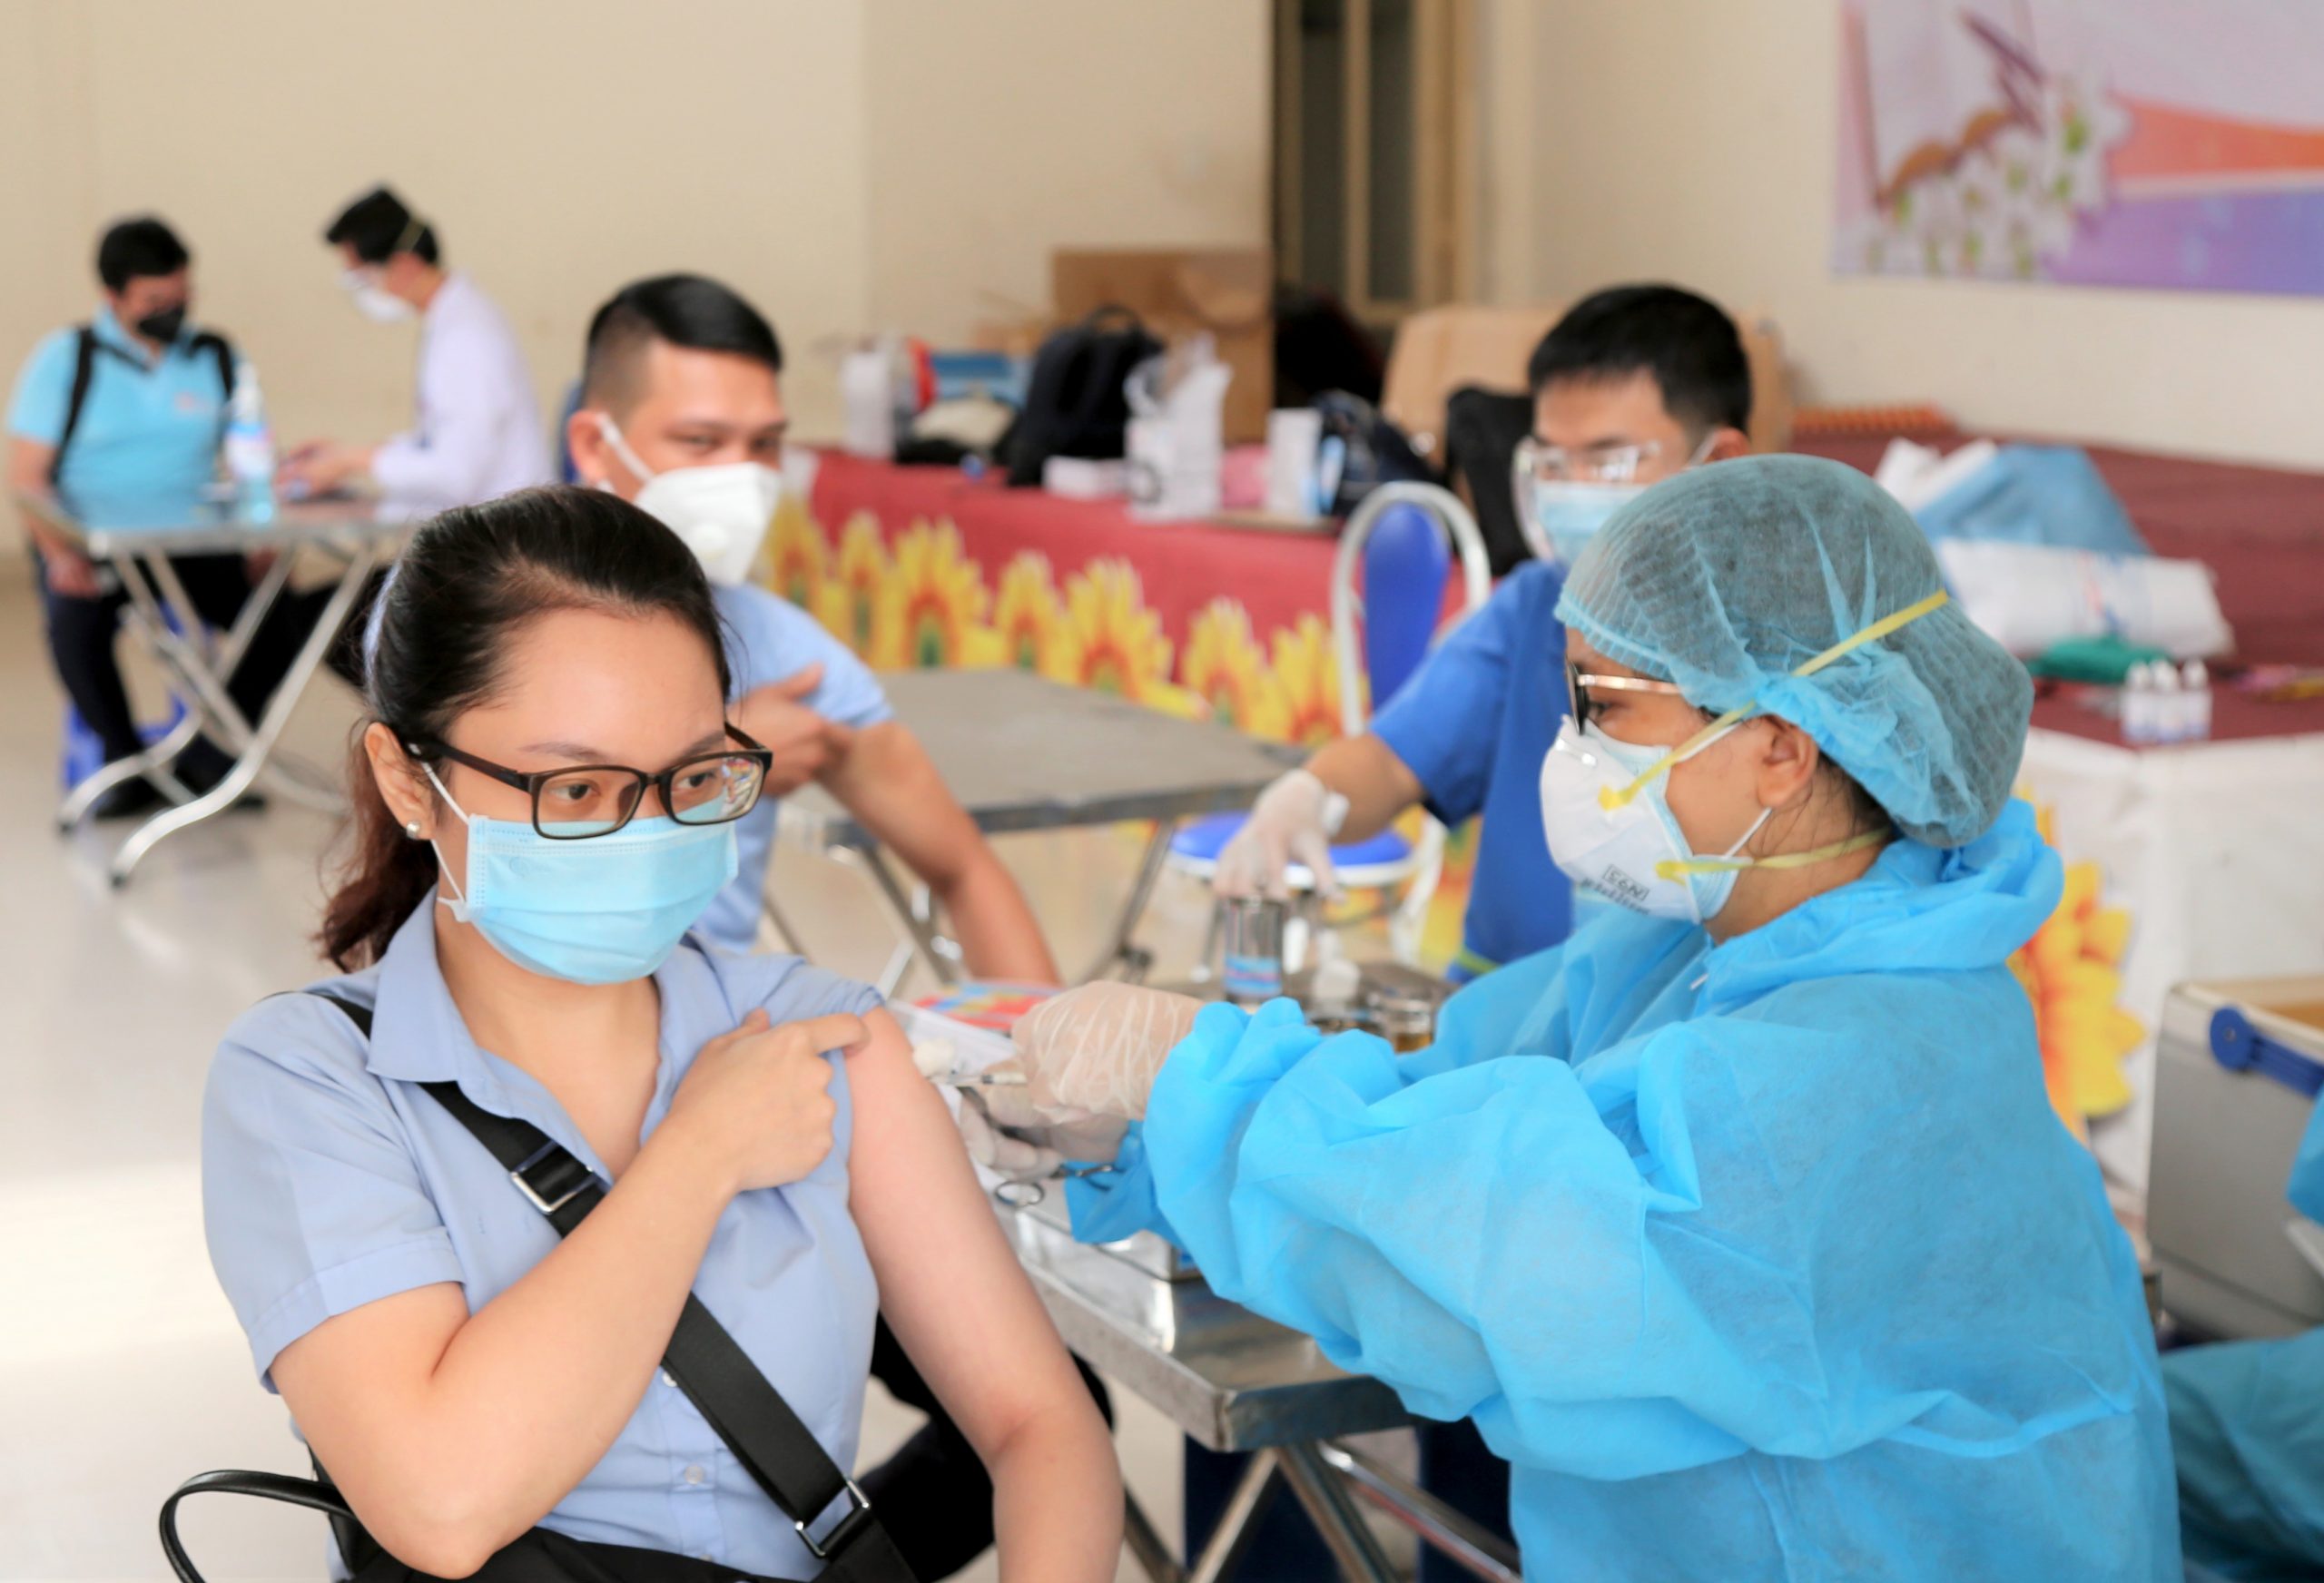 Tổng công ty Tân cảng Sài Gòn: Thần tốc triển khai chiến dịch tiêm vắc xin phòng Covid-19